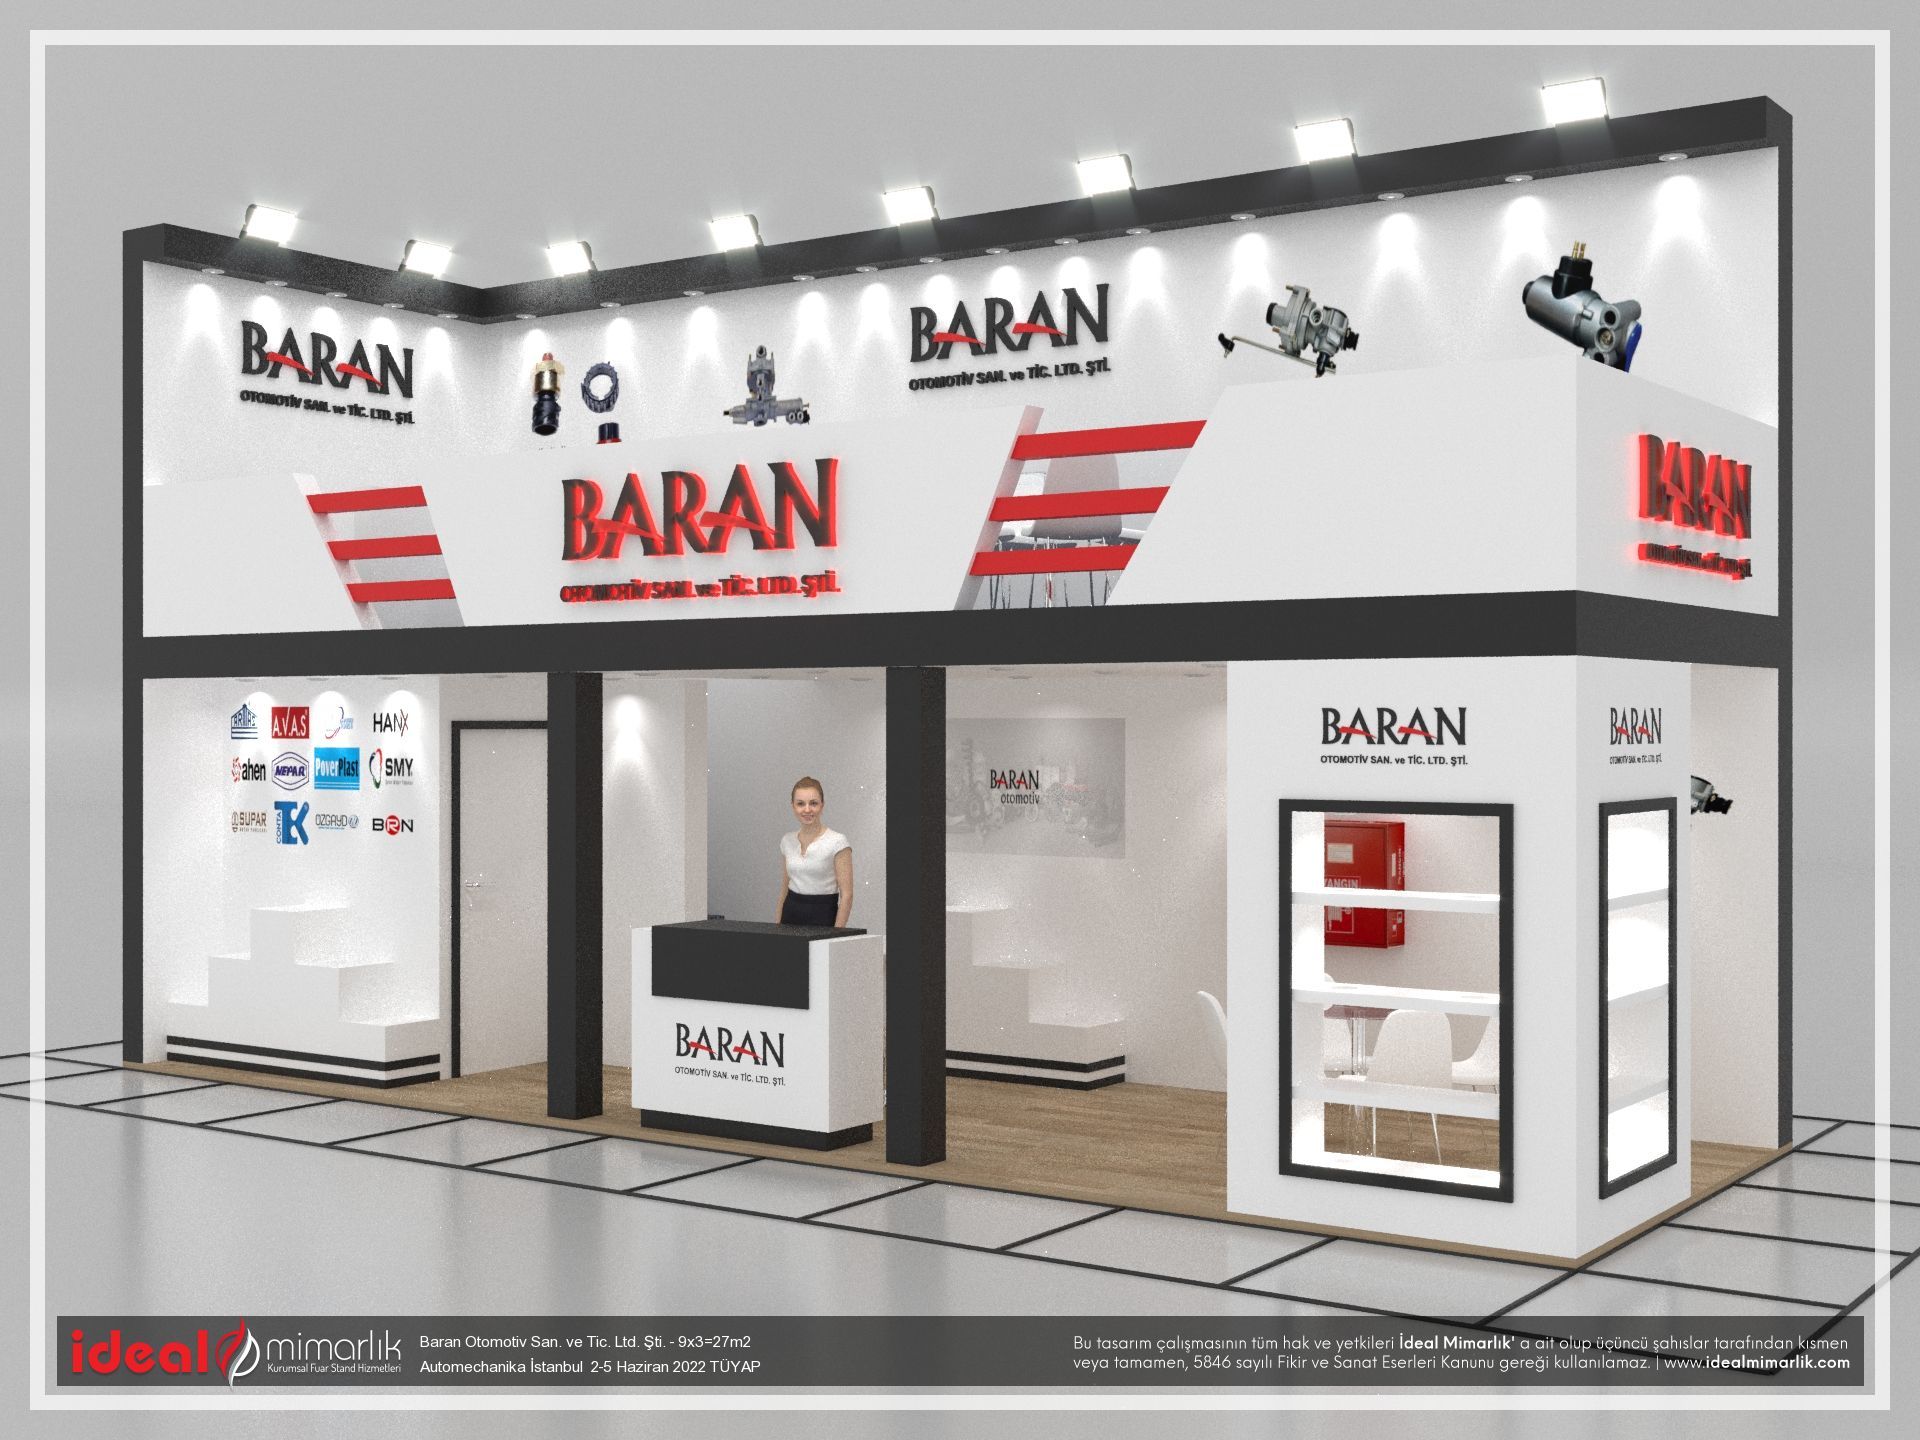 Baran Otomotiv San. ve Tic. Ltd. Şti. |Automechanika İstanbul  2-5 Haziran 2022 TÜYAP